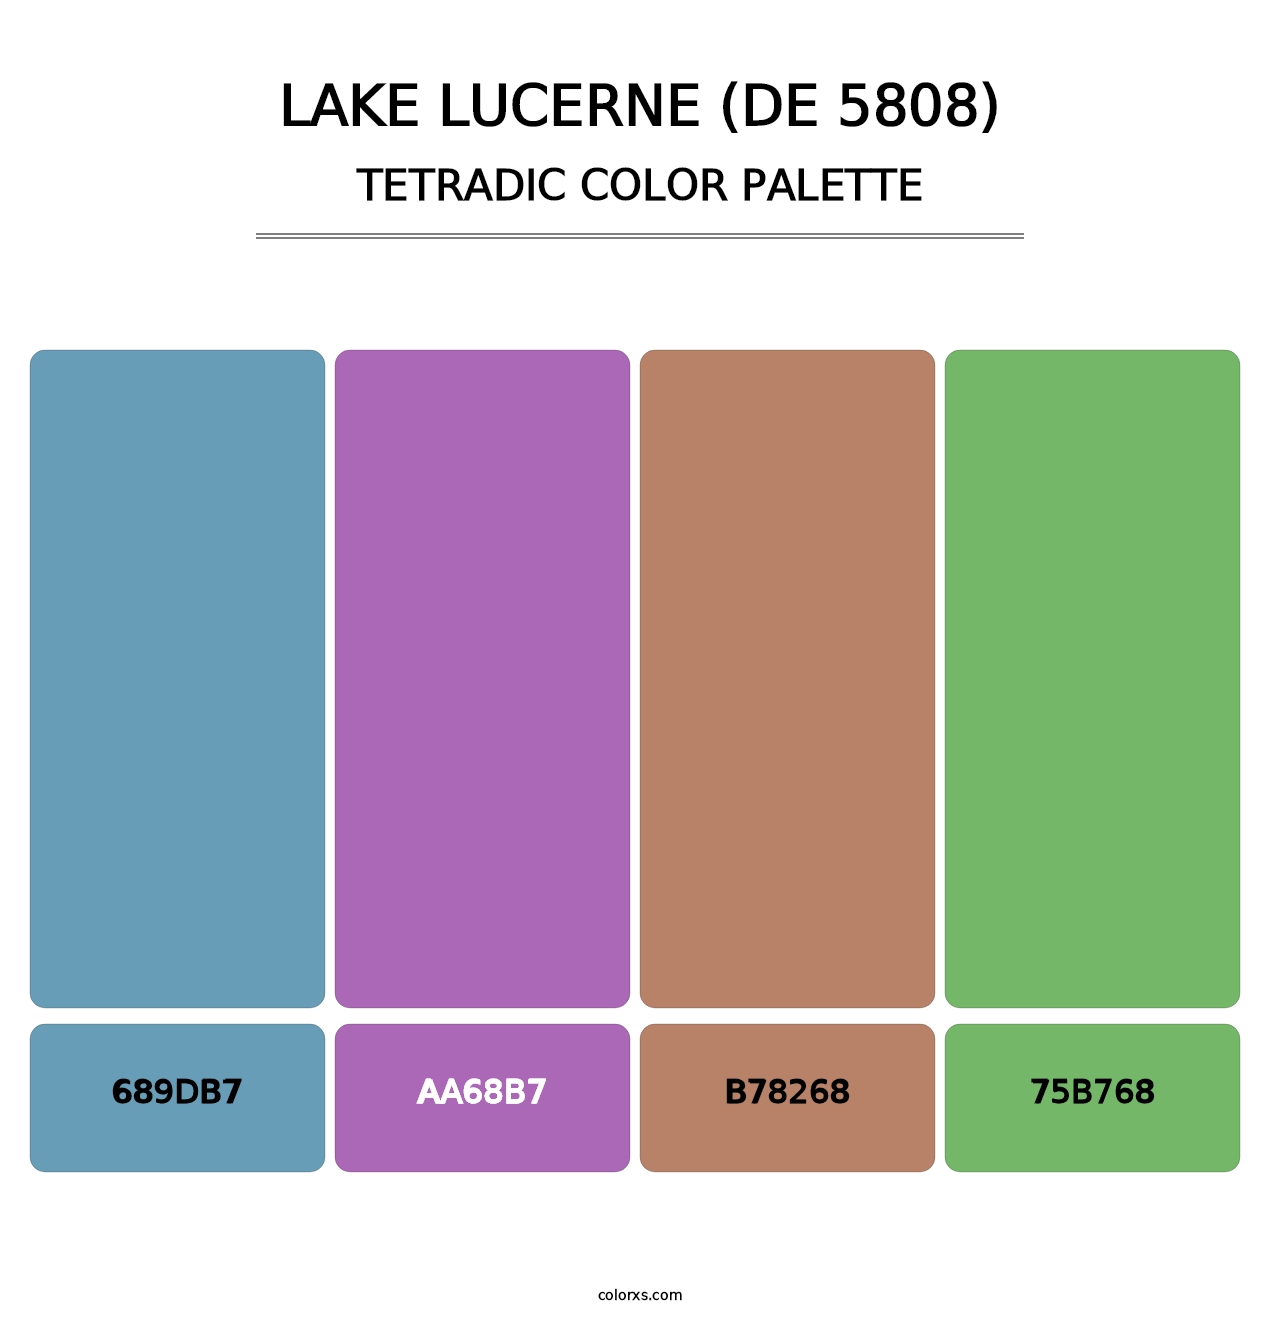 Lake Lucerne (DE 5808) - Tetradic Color Palette